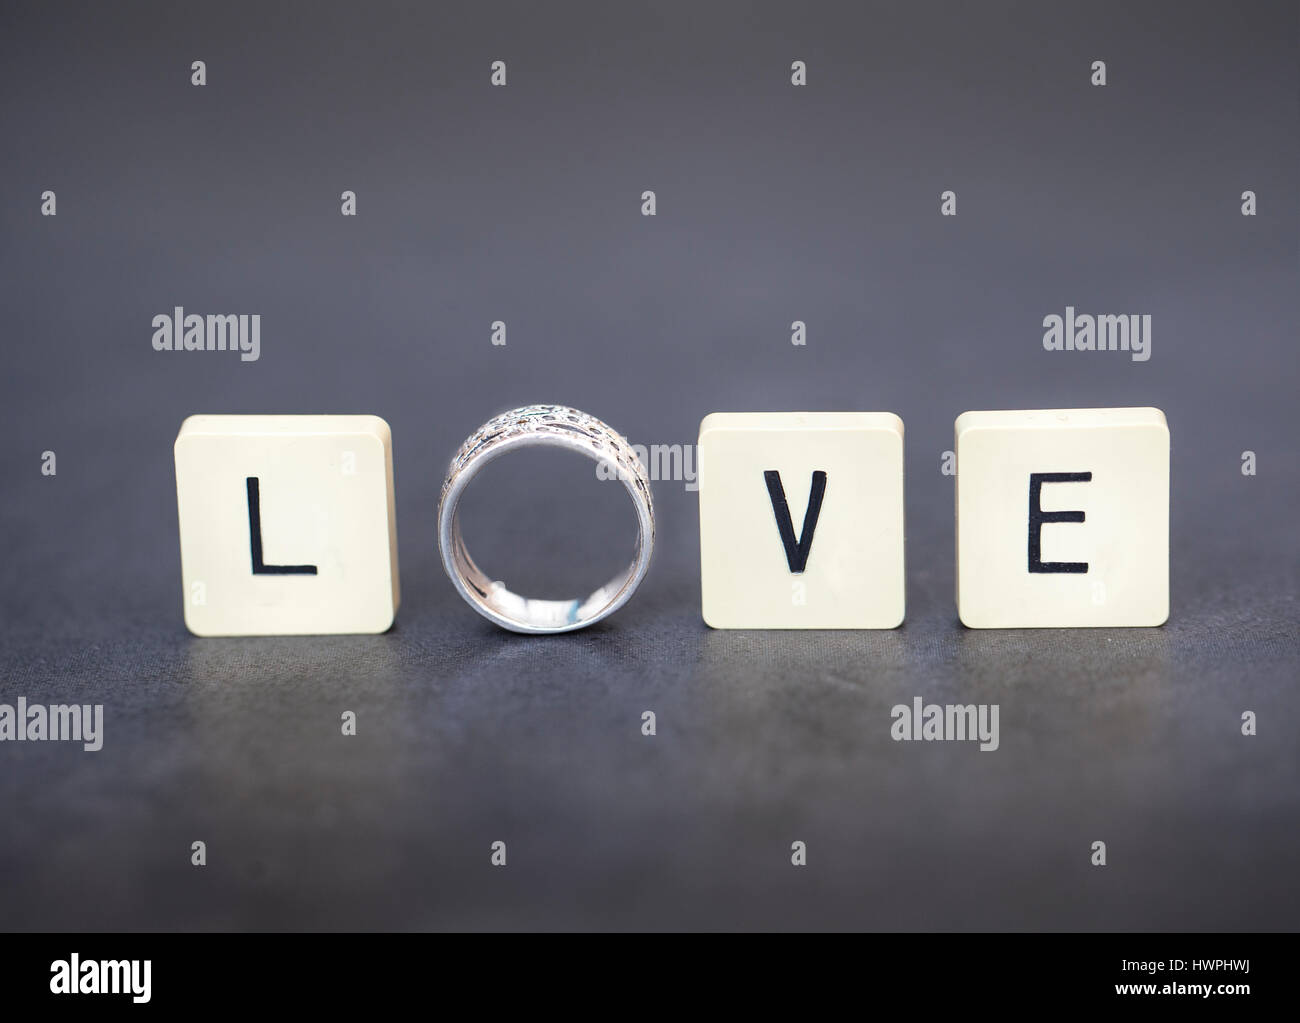 Lettre carreaux et l'anneau de l'orthographe le mot 'Amour'. Image conceptuelle pour l'Amour, mariage, mariage, fiançailles, etc... Banque D'Images